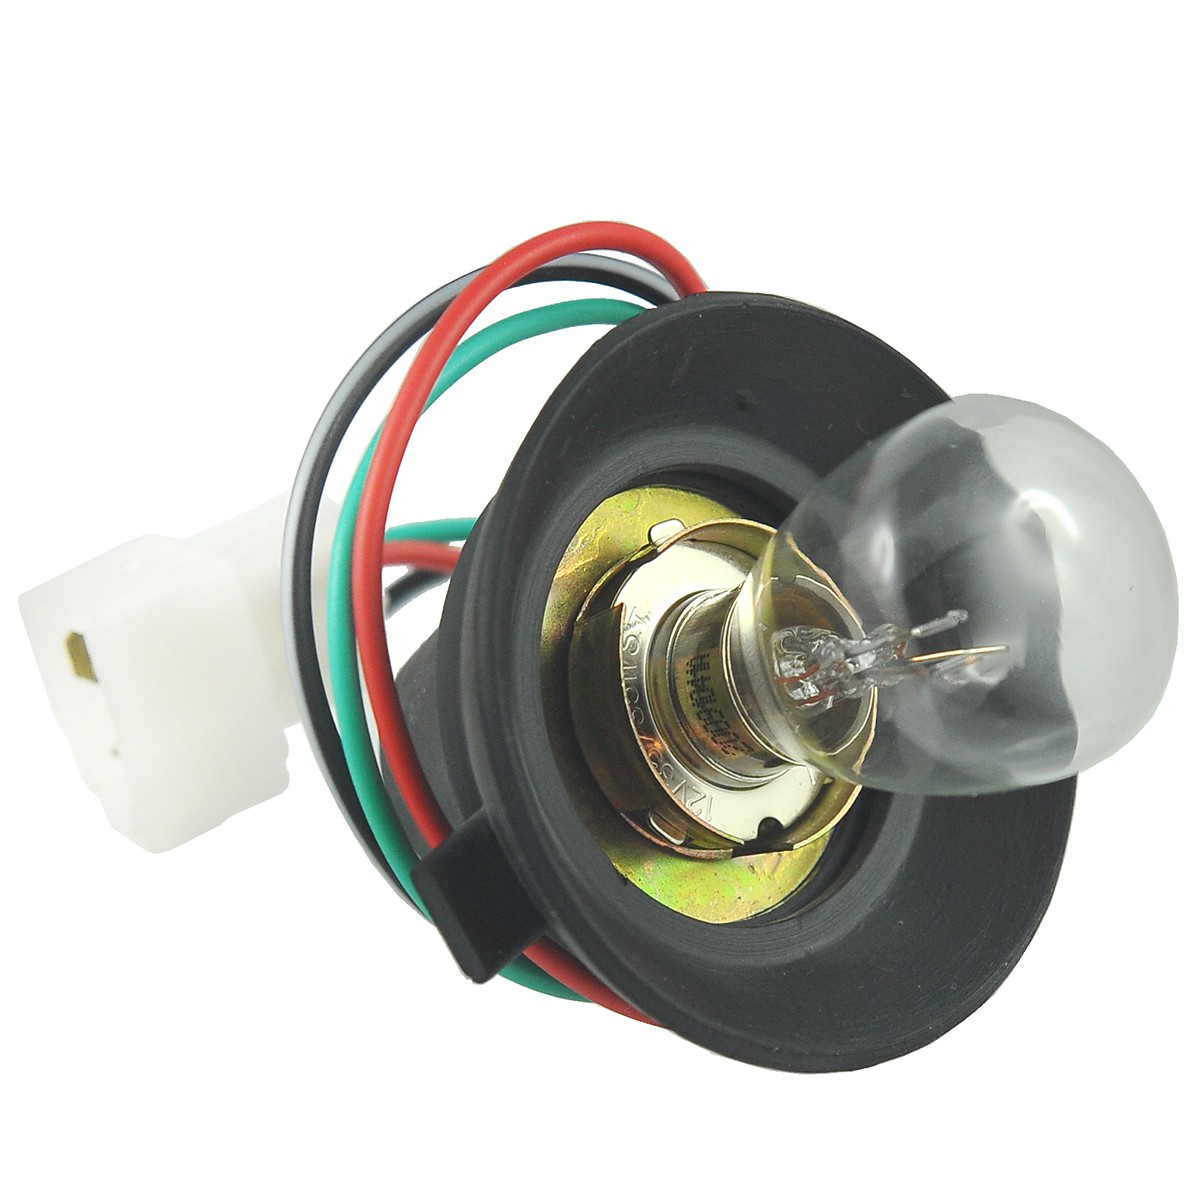 Bulb holder / 12V 35W/35W ST / Kubota M4700/M4800/M4900/M5000/M5400/M5700/M9000/M9540 / 3A011-75740 / 5-07-121-04